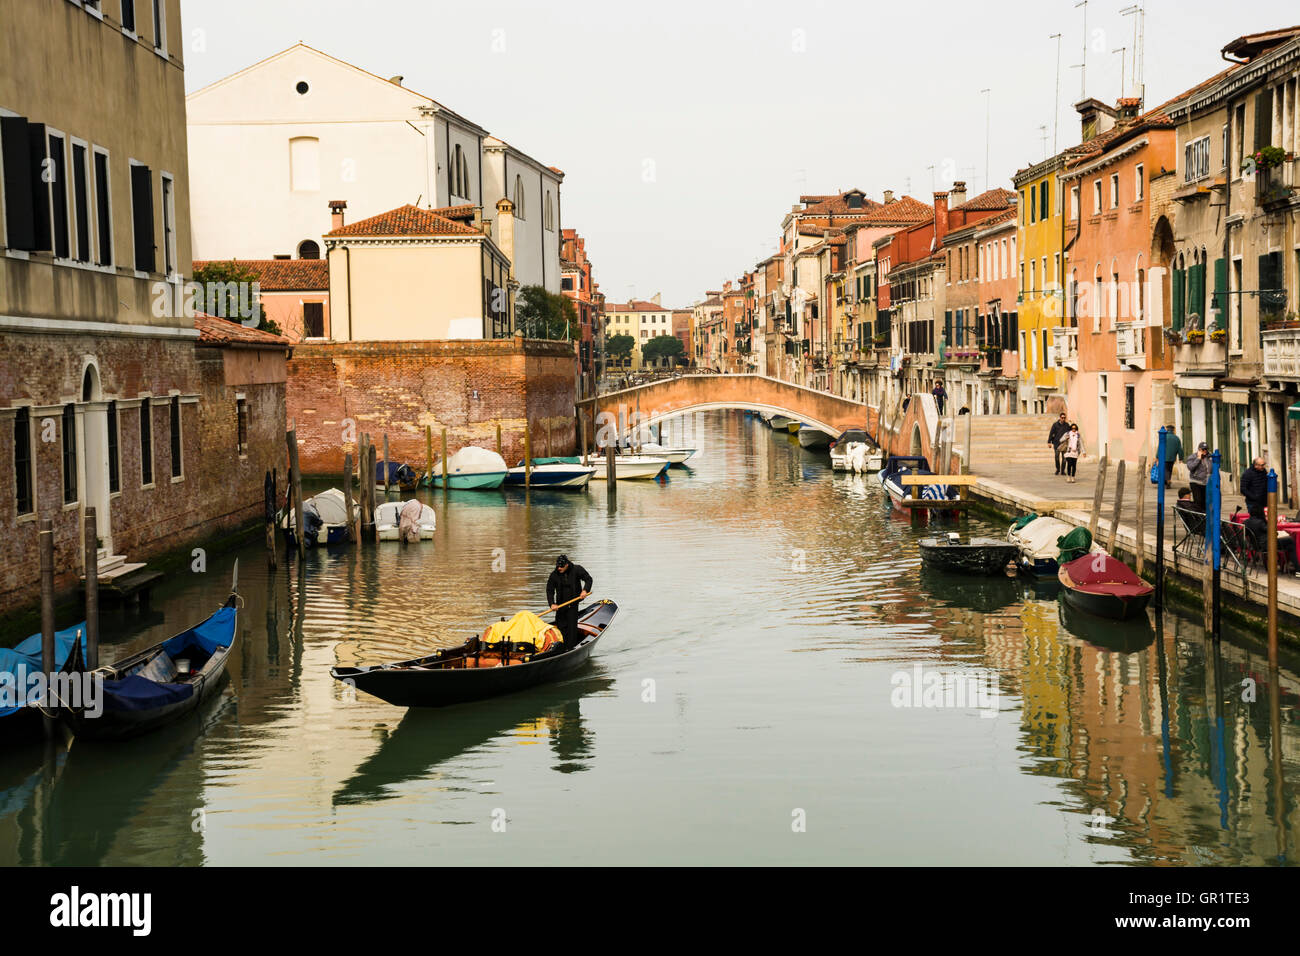 Canal with Boats, Cannareggio, Venice, Italy, Europe Stock Photo